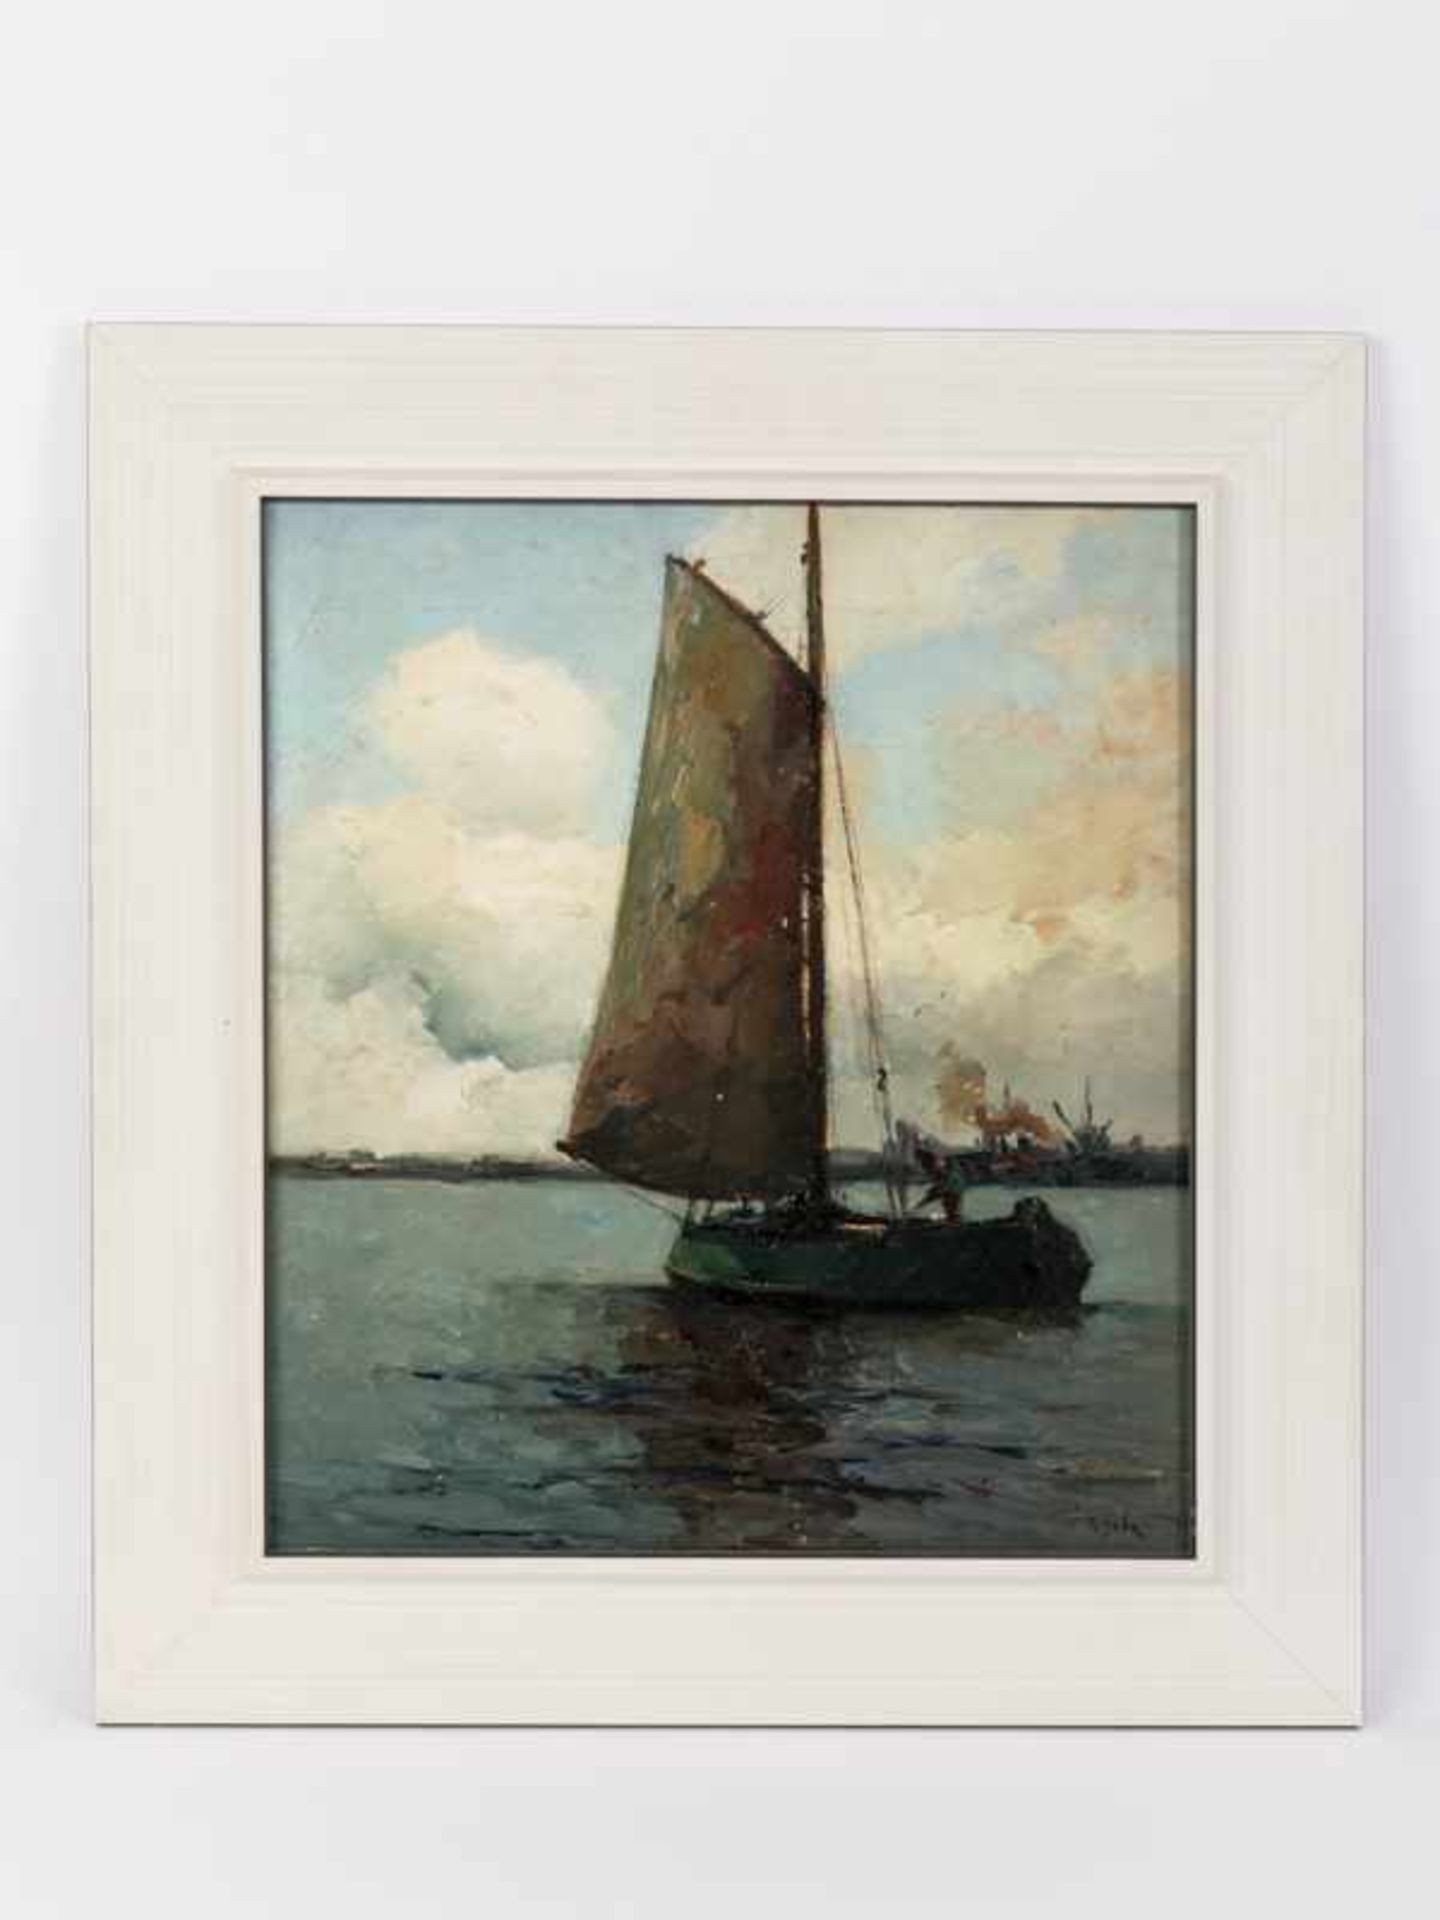 Guba, Rudolf Anton (1884 - 1950). Öl auf Malkarton; "Fischerboot auf dem Fluß vor schemenhafter